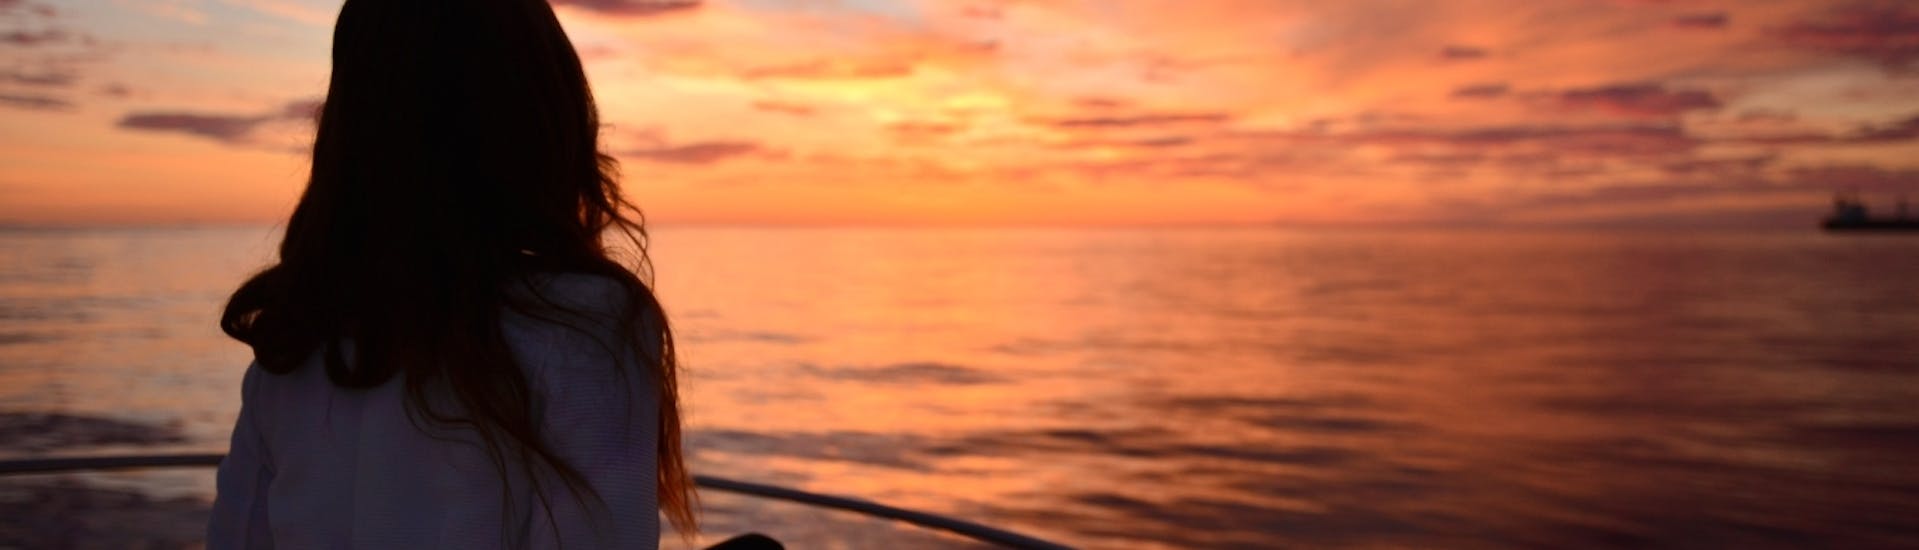 Giro in barca lungo la costa d'Ibiza al tramonto